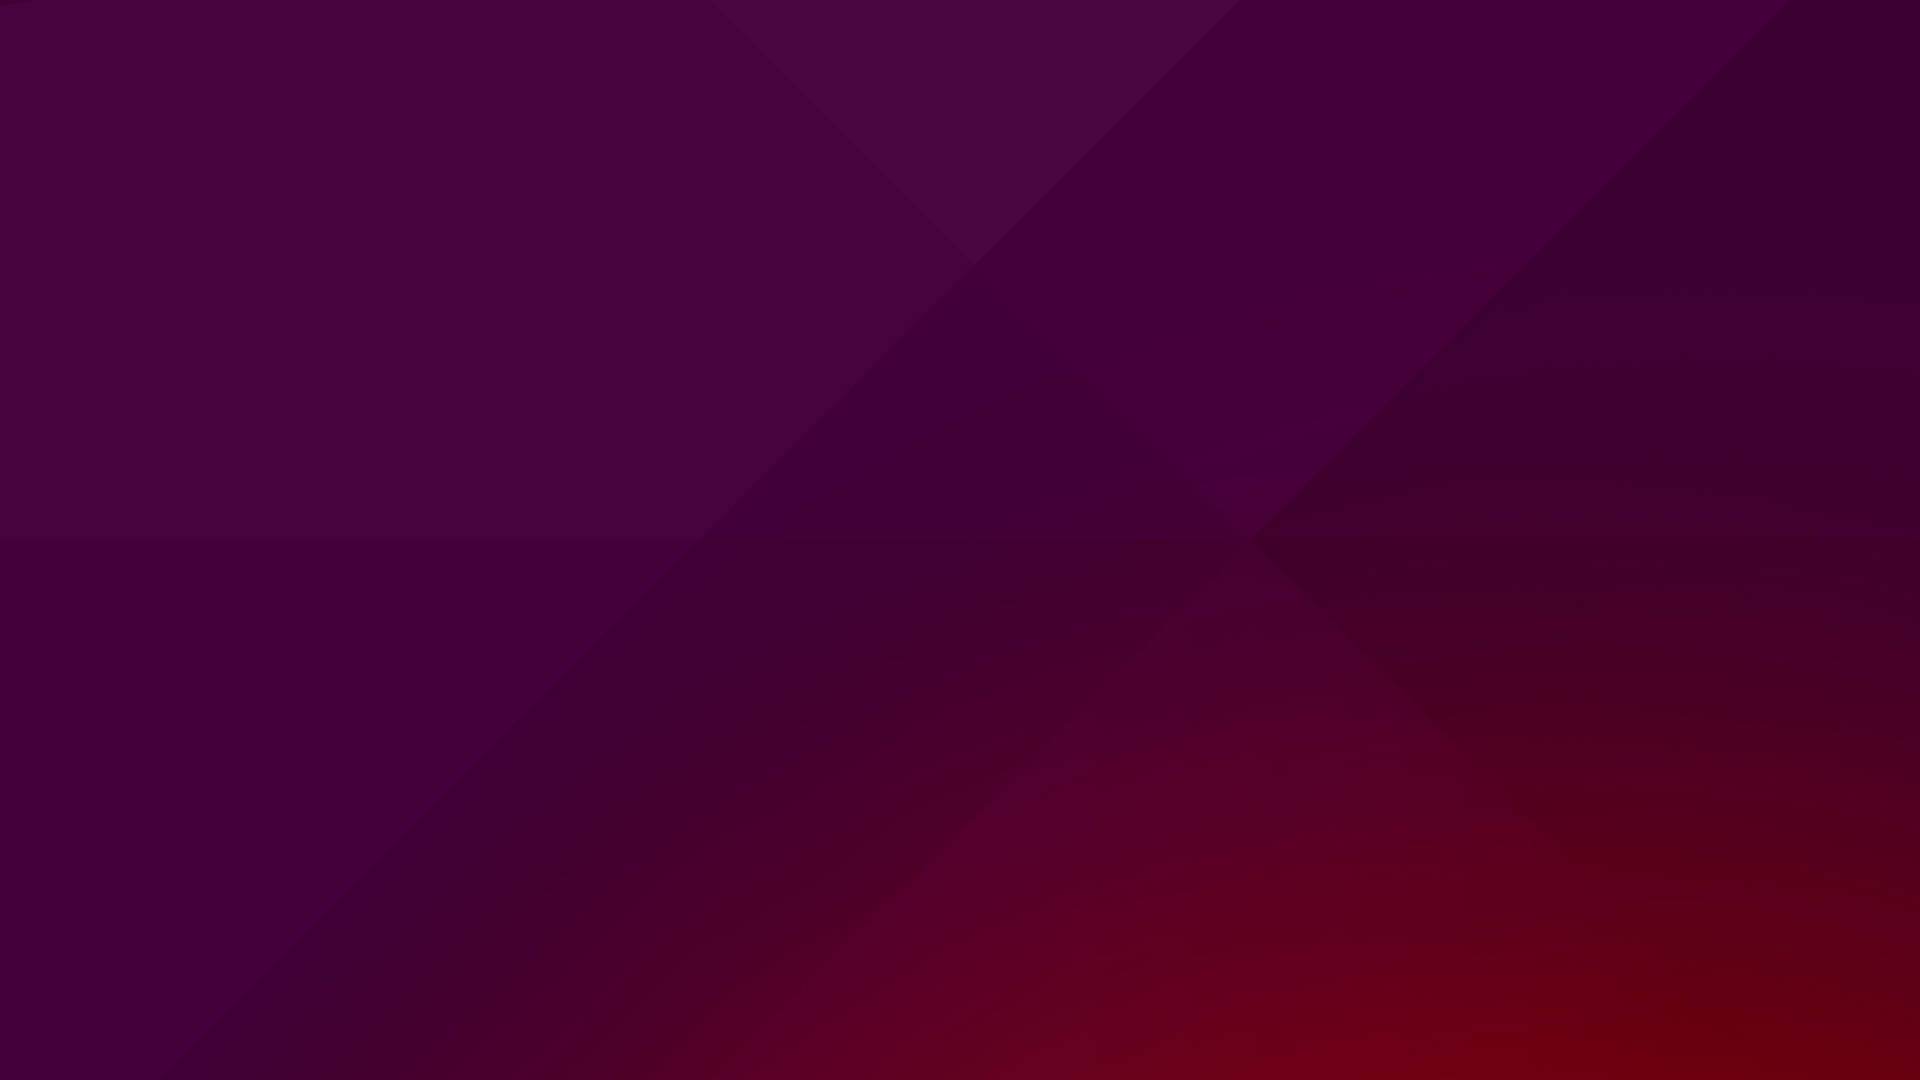 Default Dark Purple Ubuntu